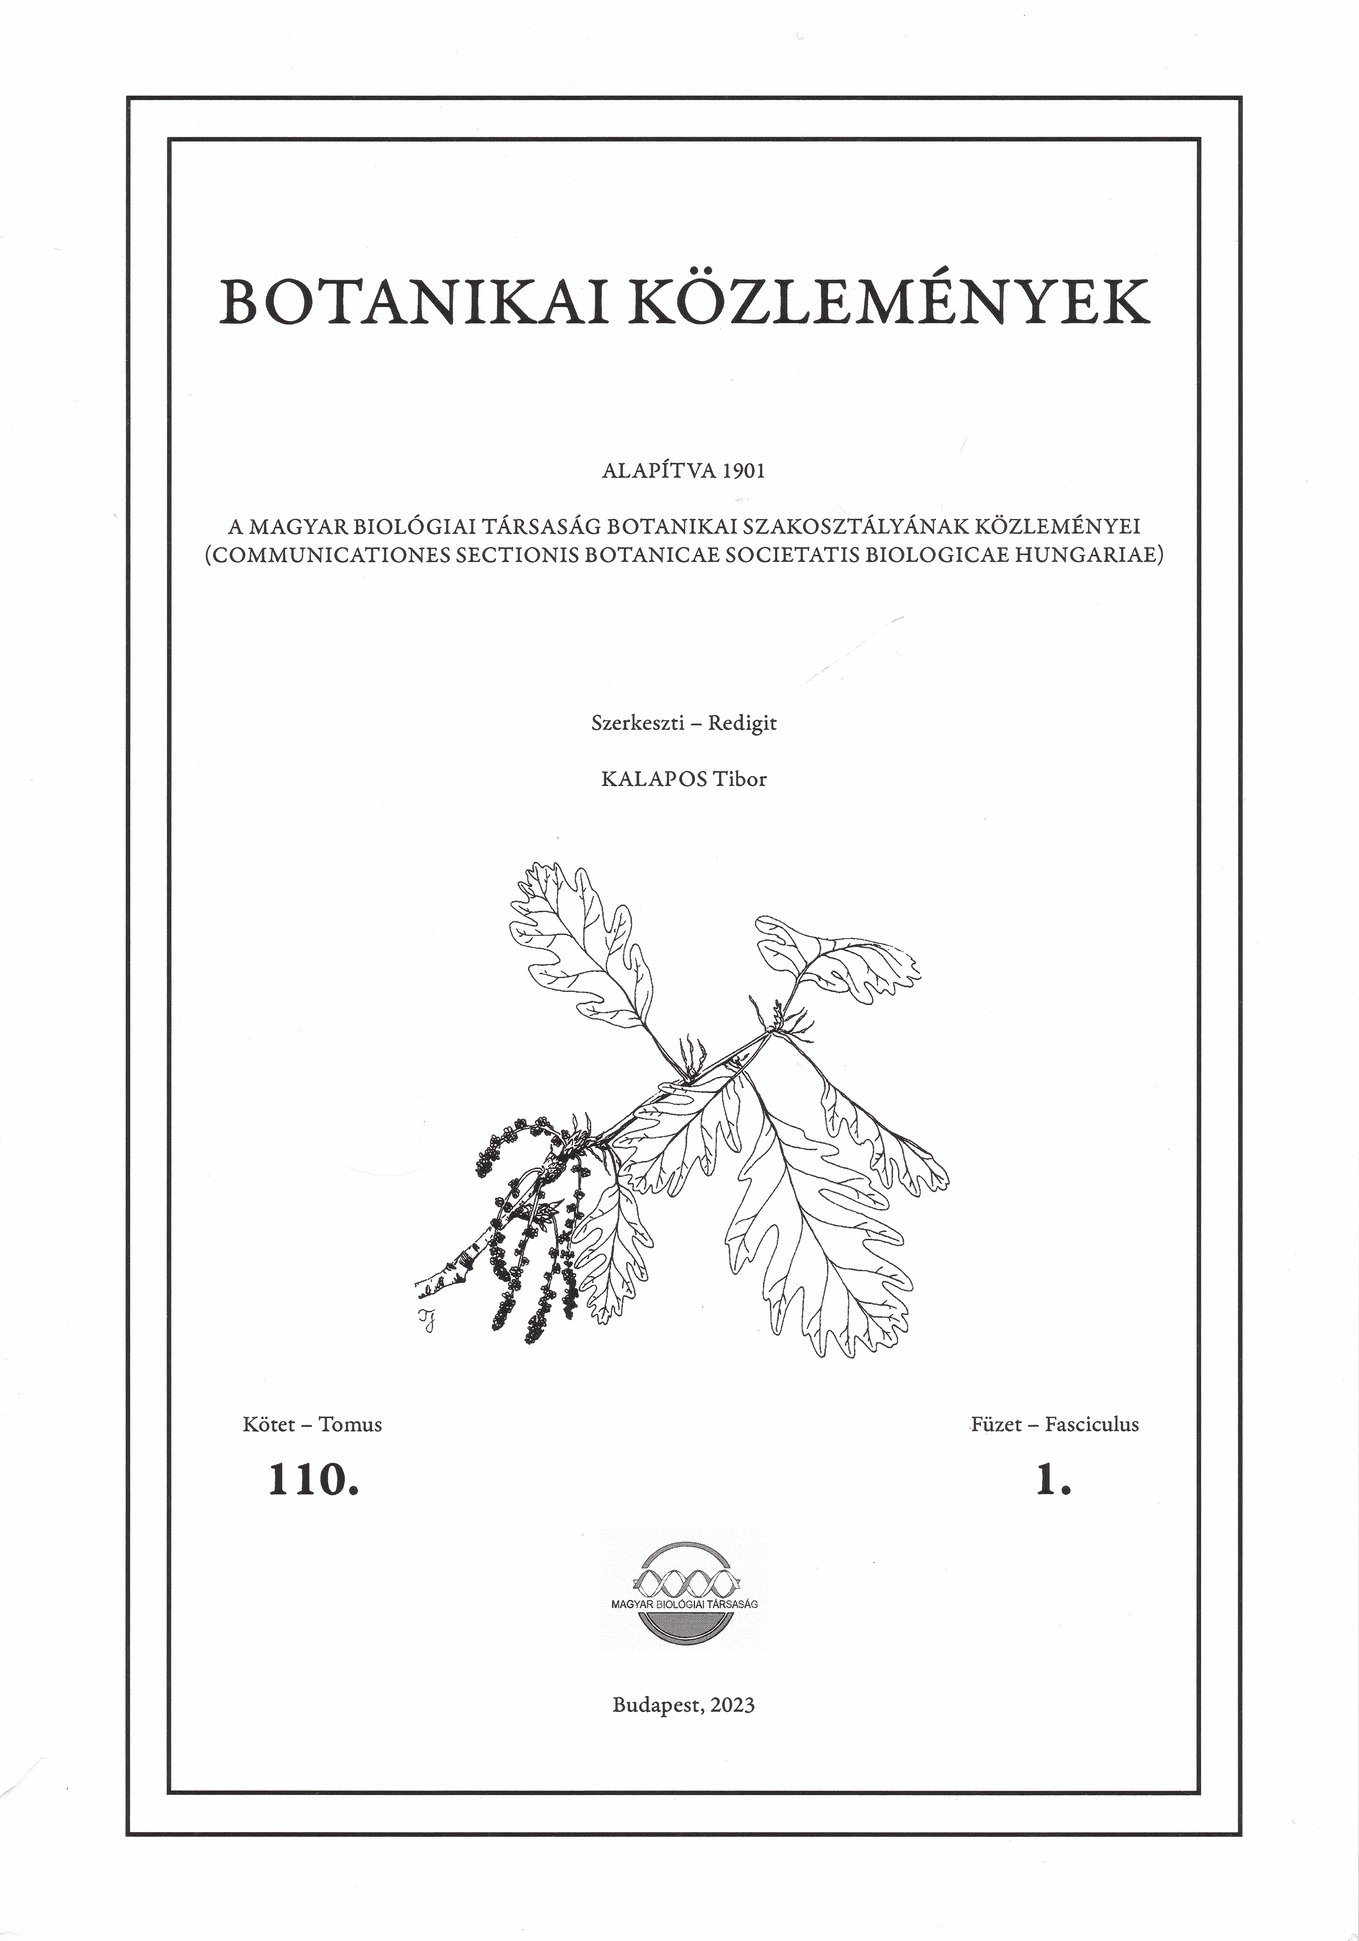 Botanikai közlemények 2023/110. kötet 1. füzet (Rippl-Rónai Múzeum CC BY-NC-ND)